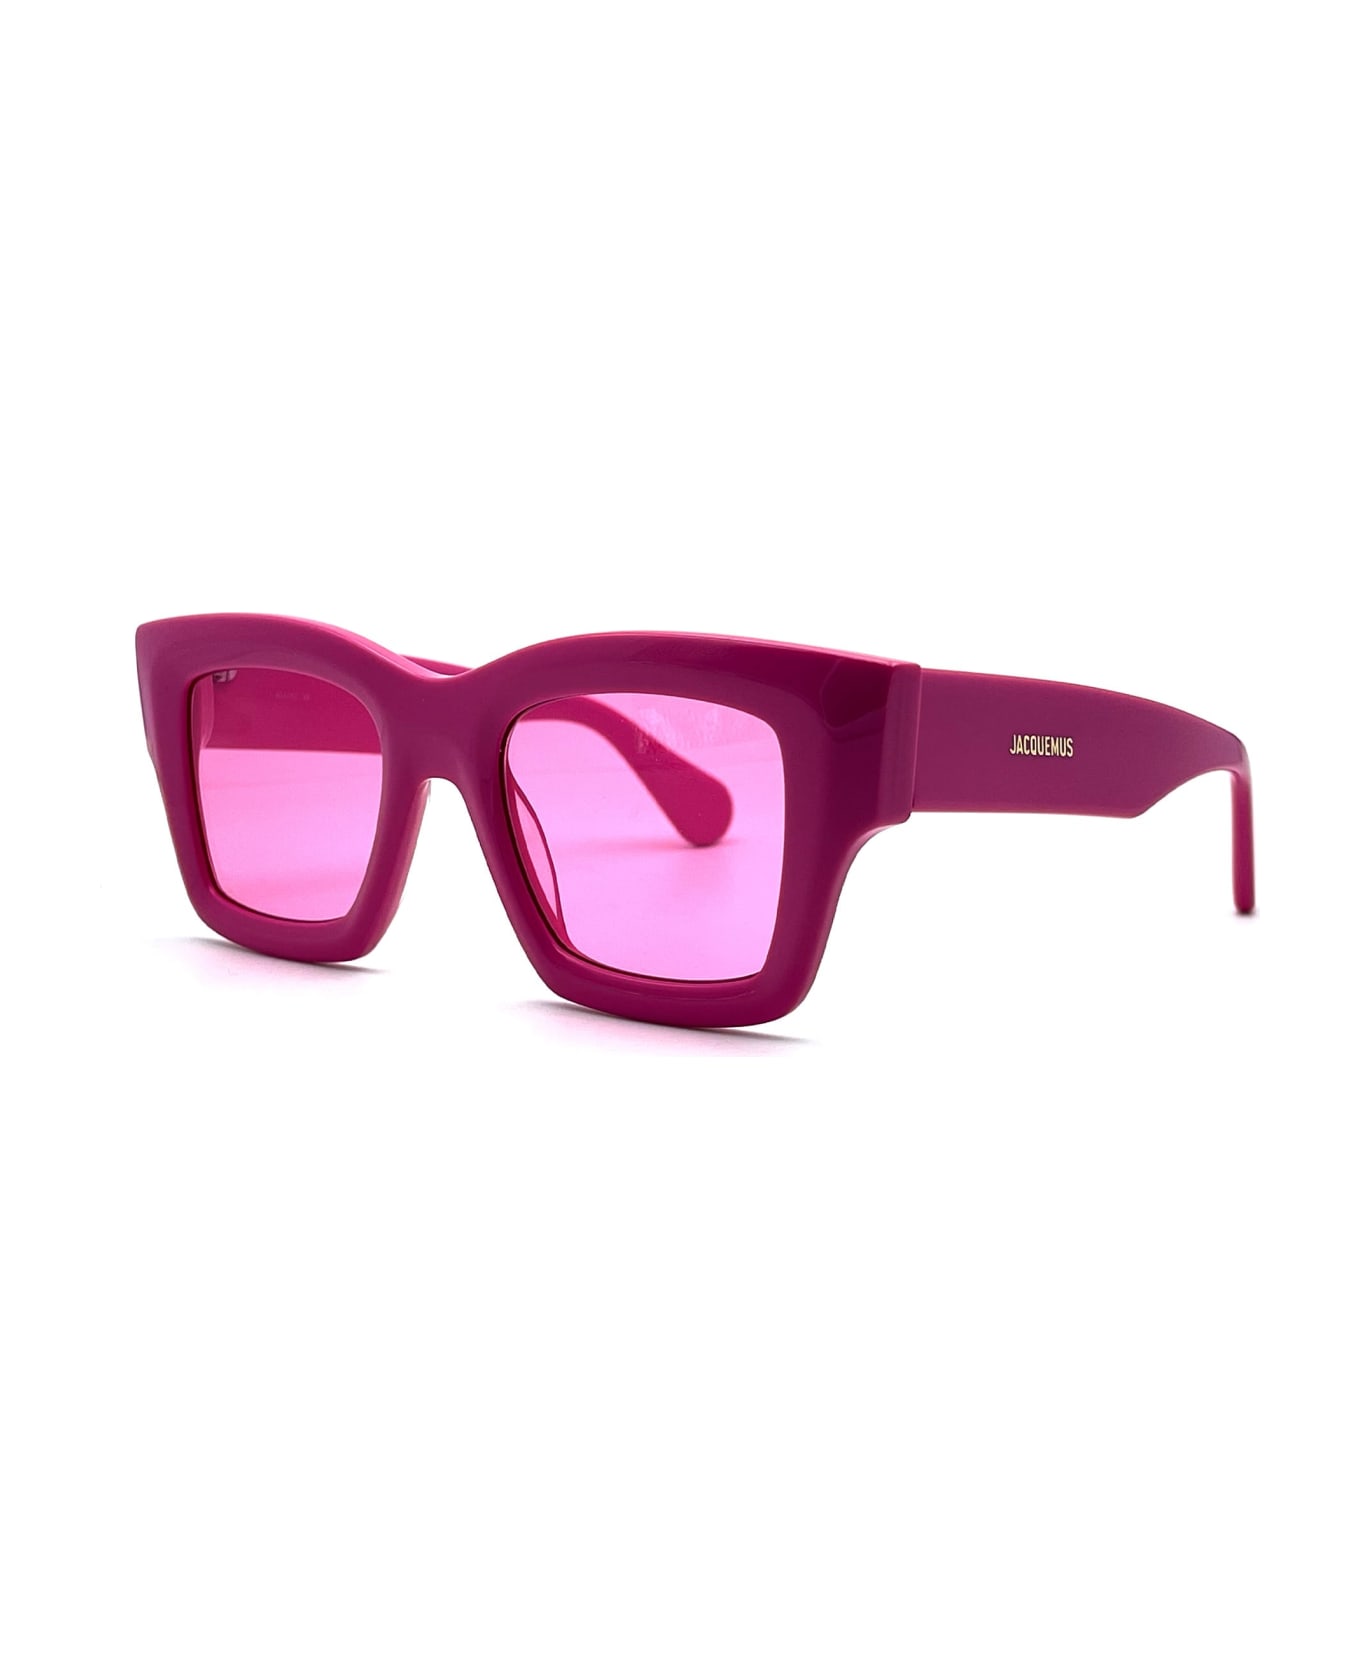 Jacquemus Les Lunettes Baci - Pink Sunglasses - pink